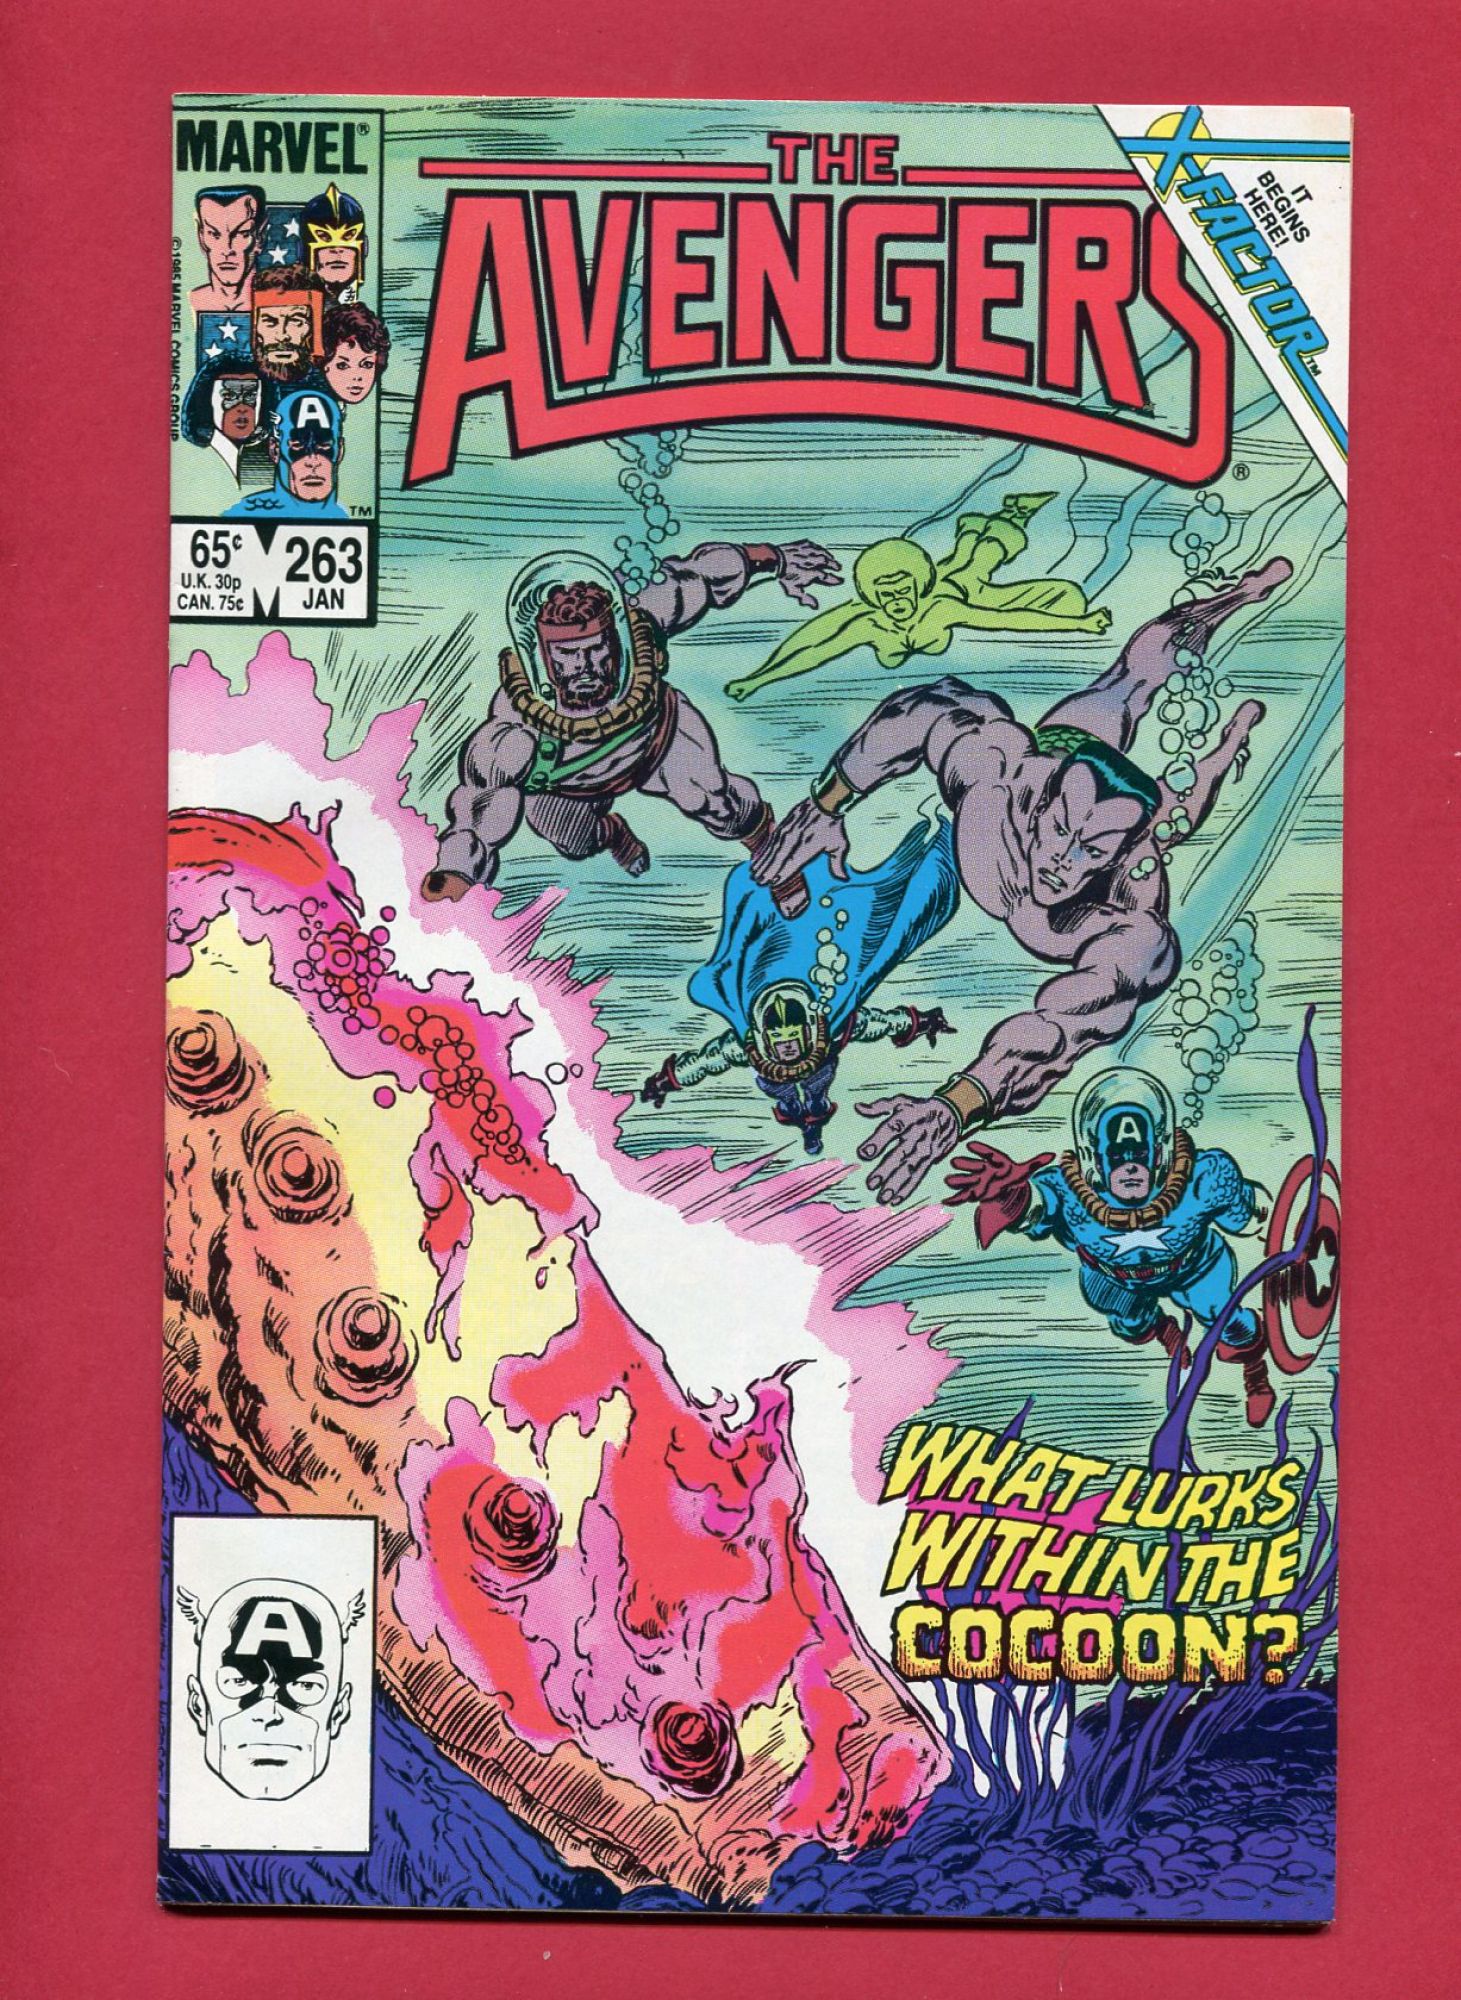 Avengers #263, Jan 1986, 8.5 VF+